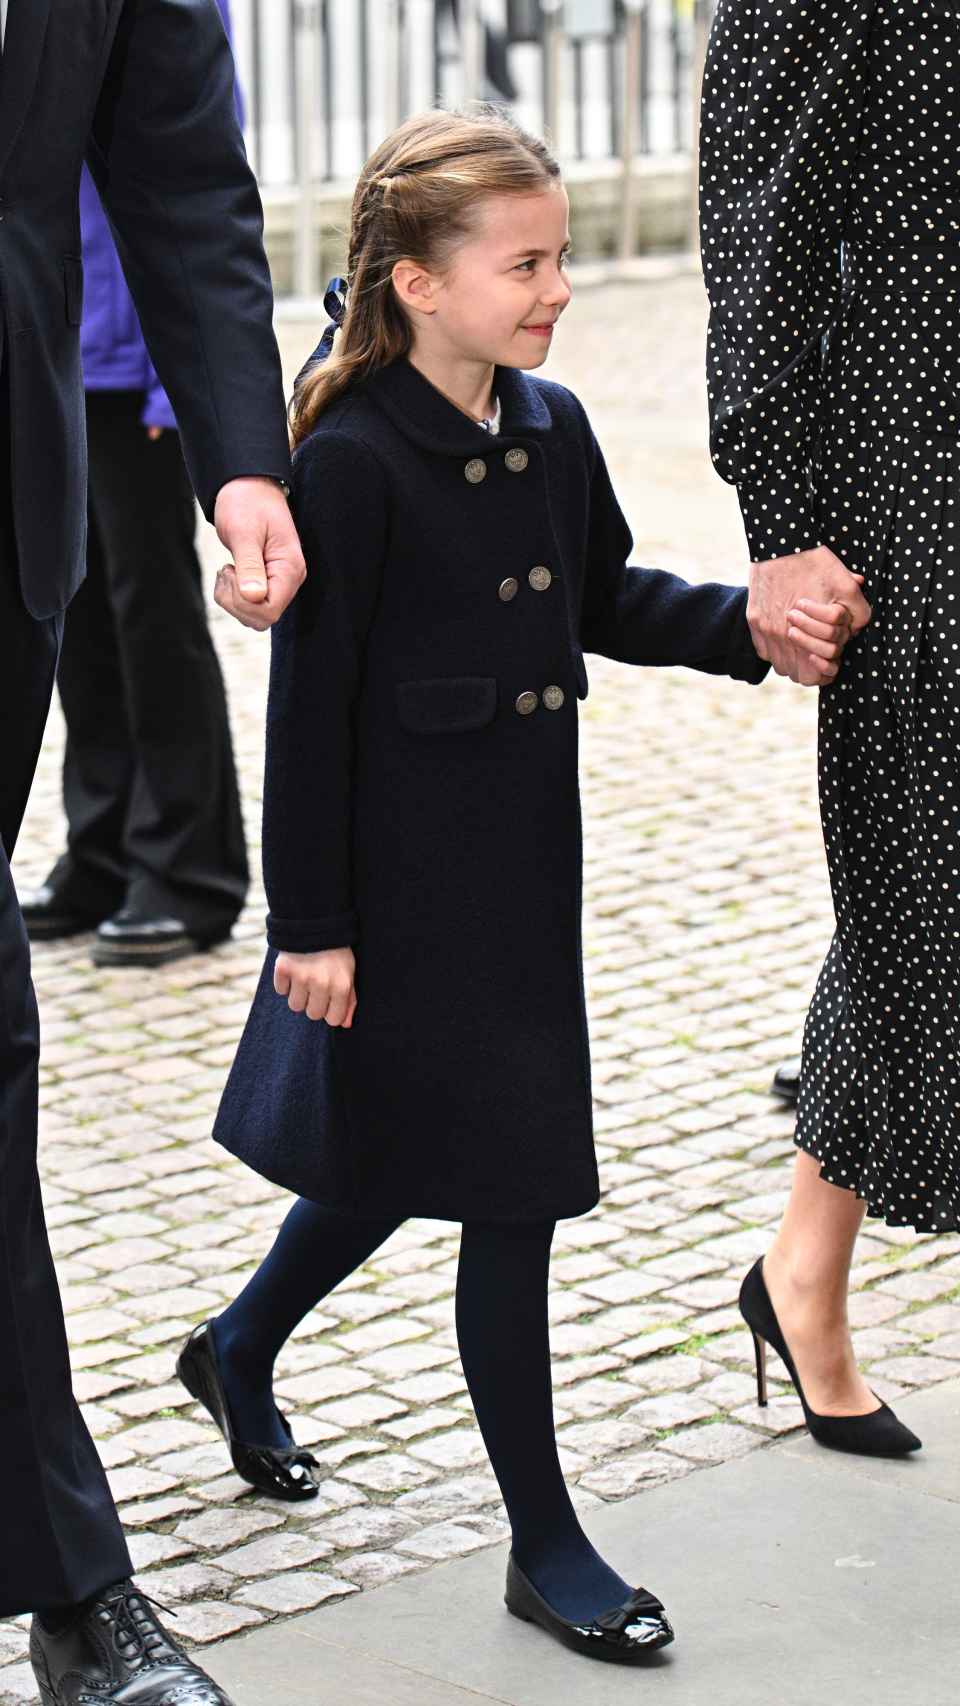 La princesa Charlotte estuvo en todo momento agarrada de la mano de su madre, la duquesa de Cambridge.